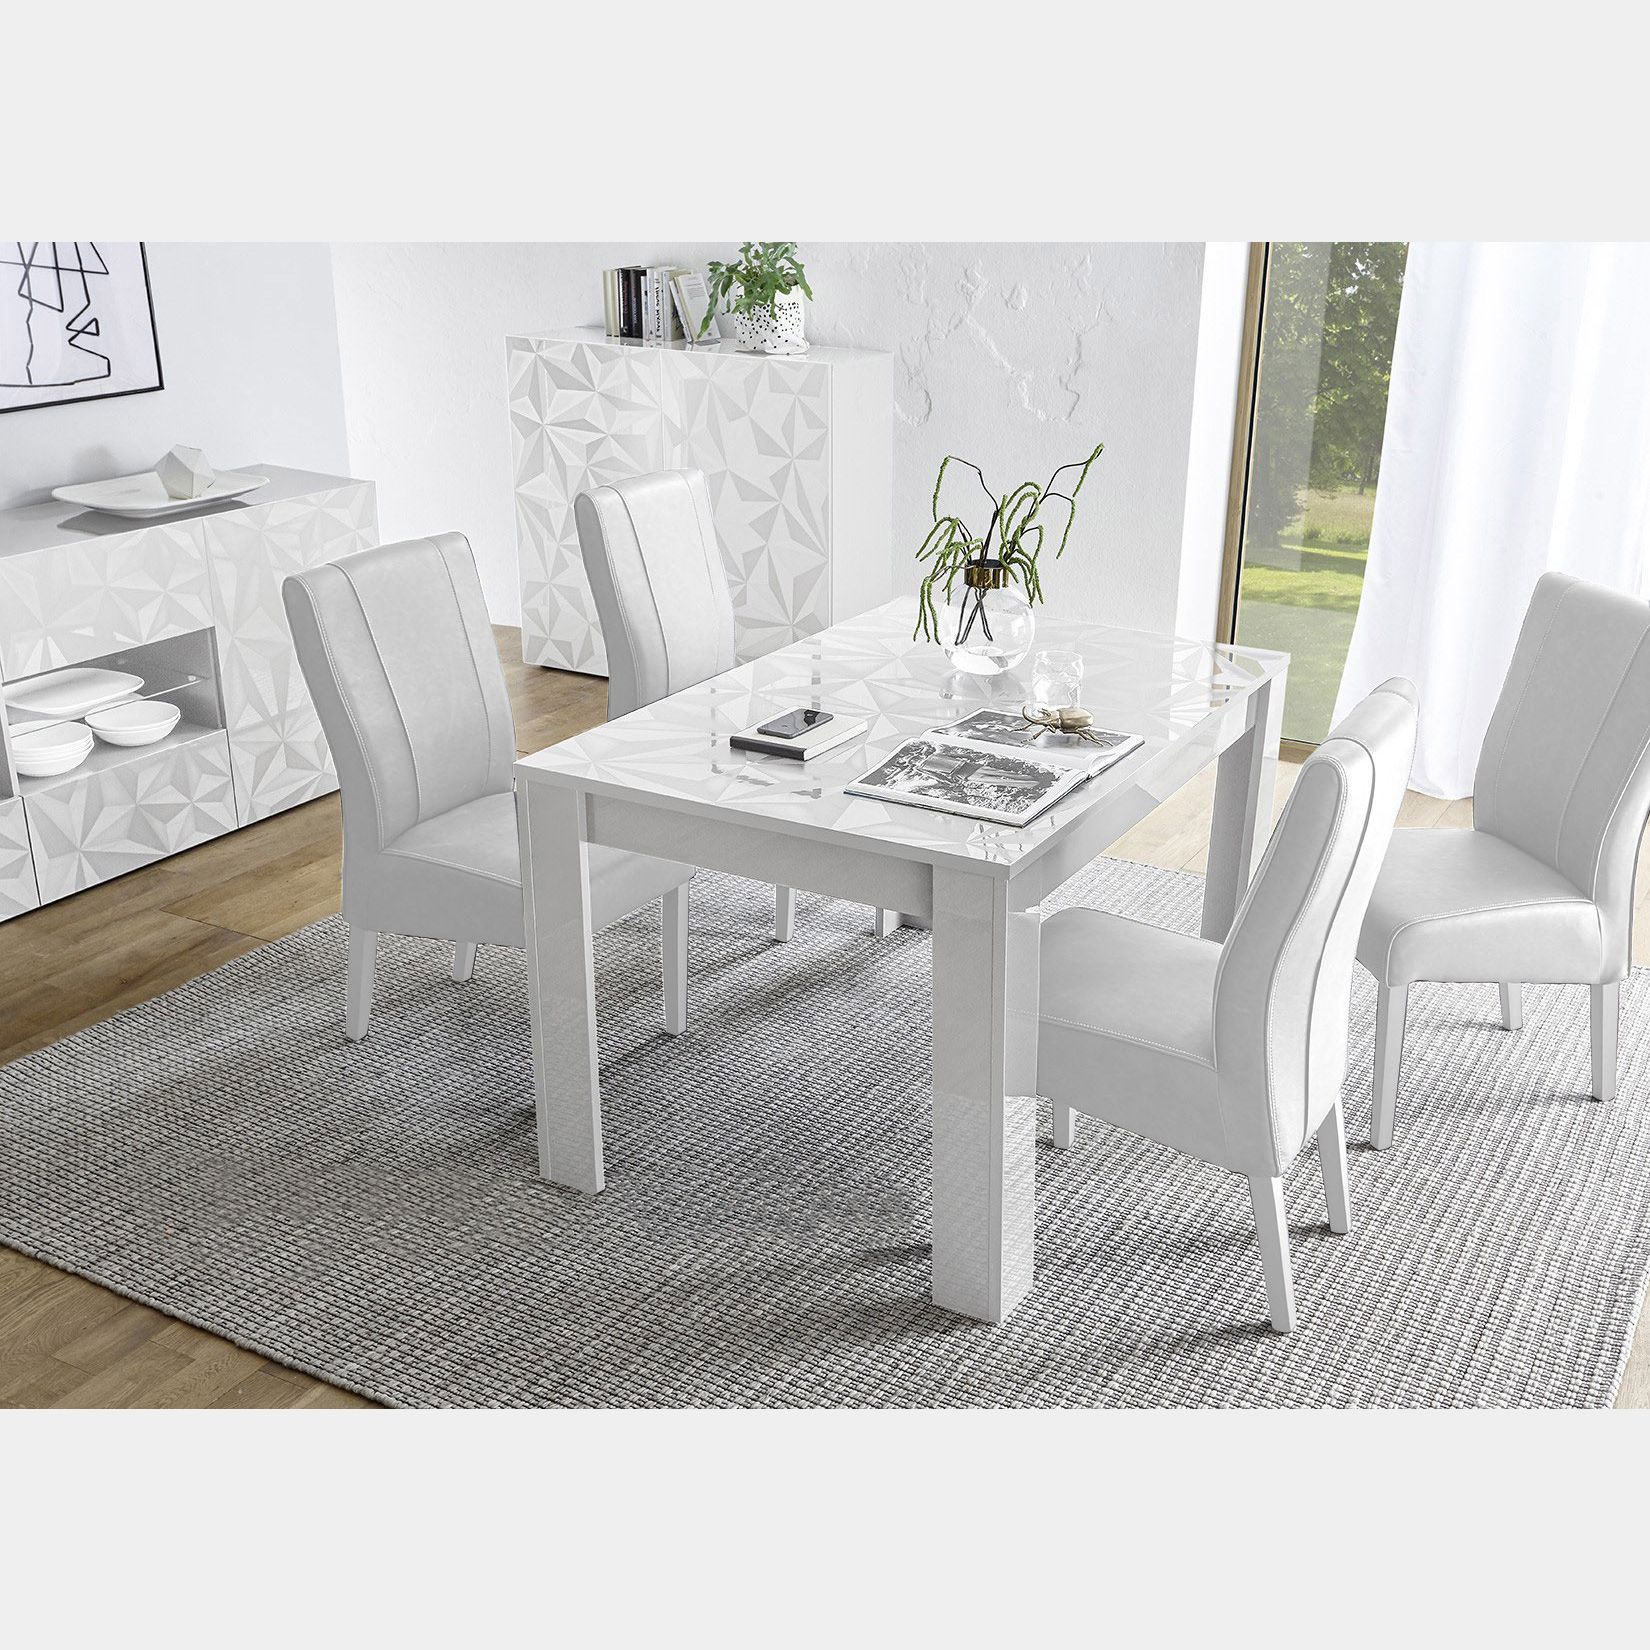 Tavolo moderno con serigrafia prismatica e 6 posti a sedere, finitura bianco  lucido